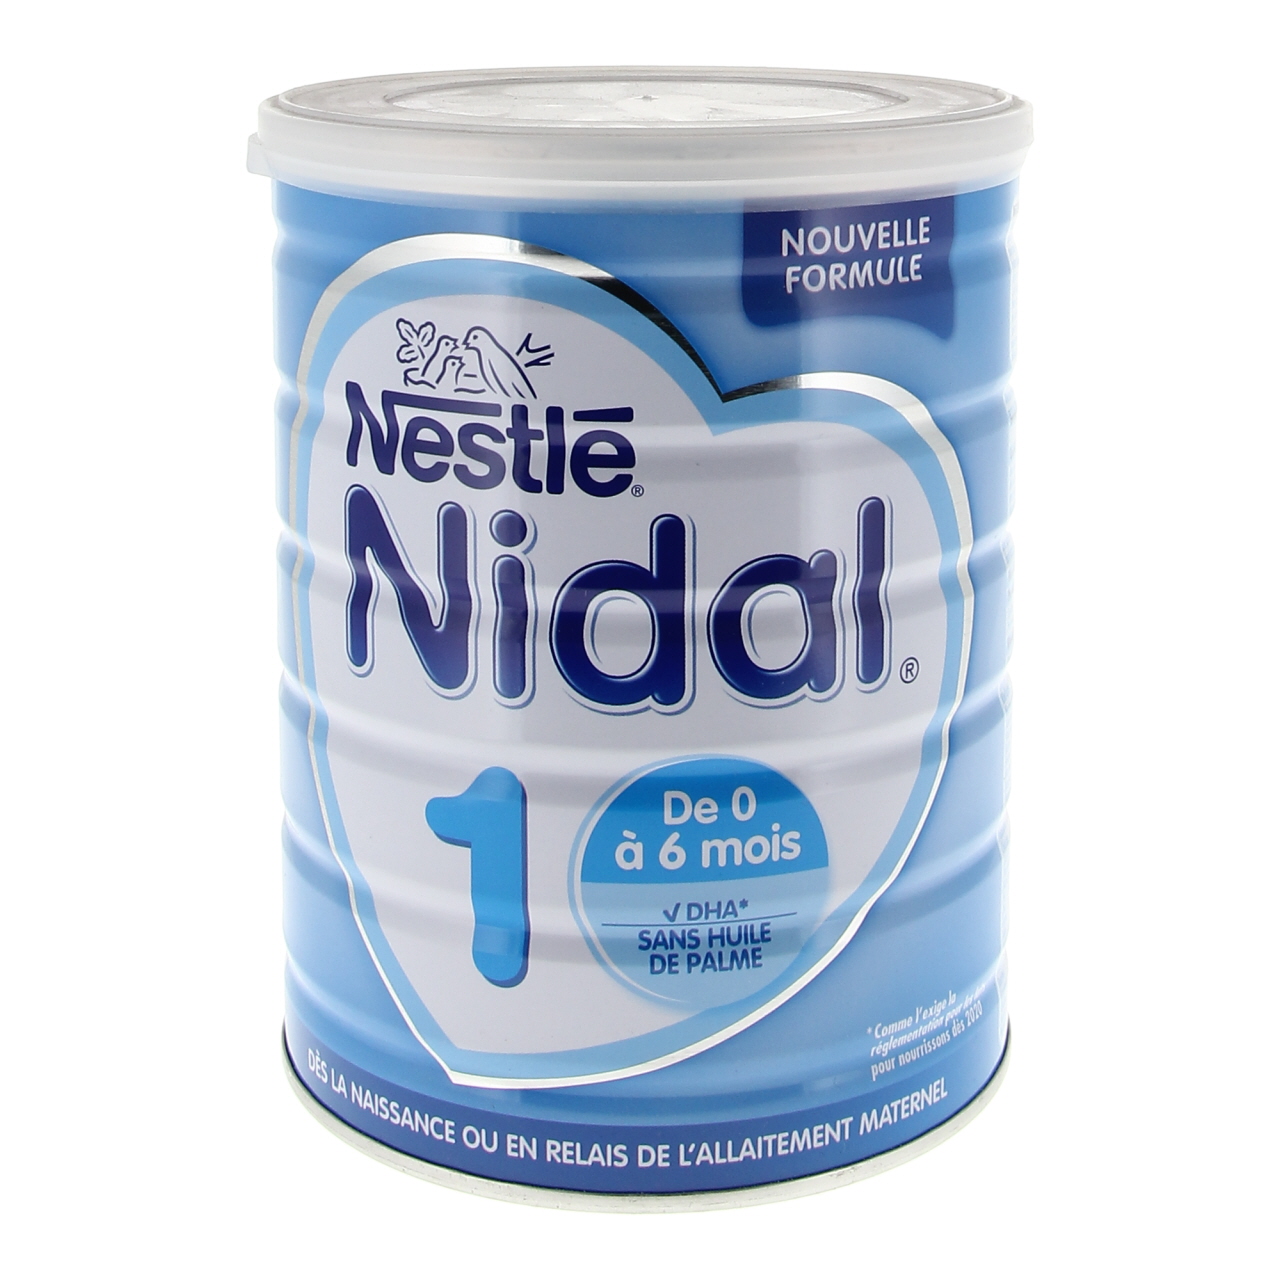 Lait en poudre Nidal 1 - de 0 à 6 mois, Nestlé (2 x 350 g)